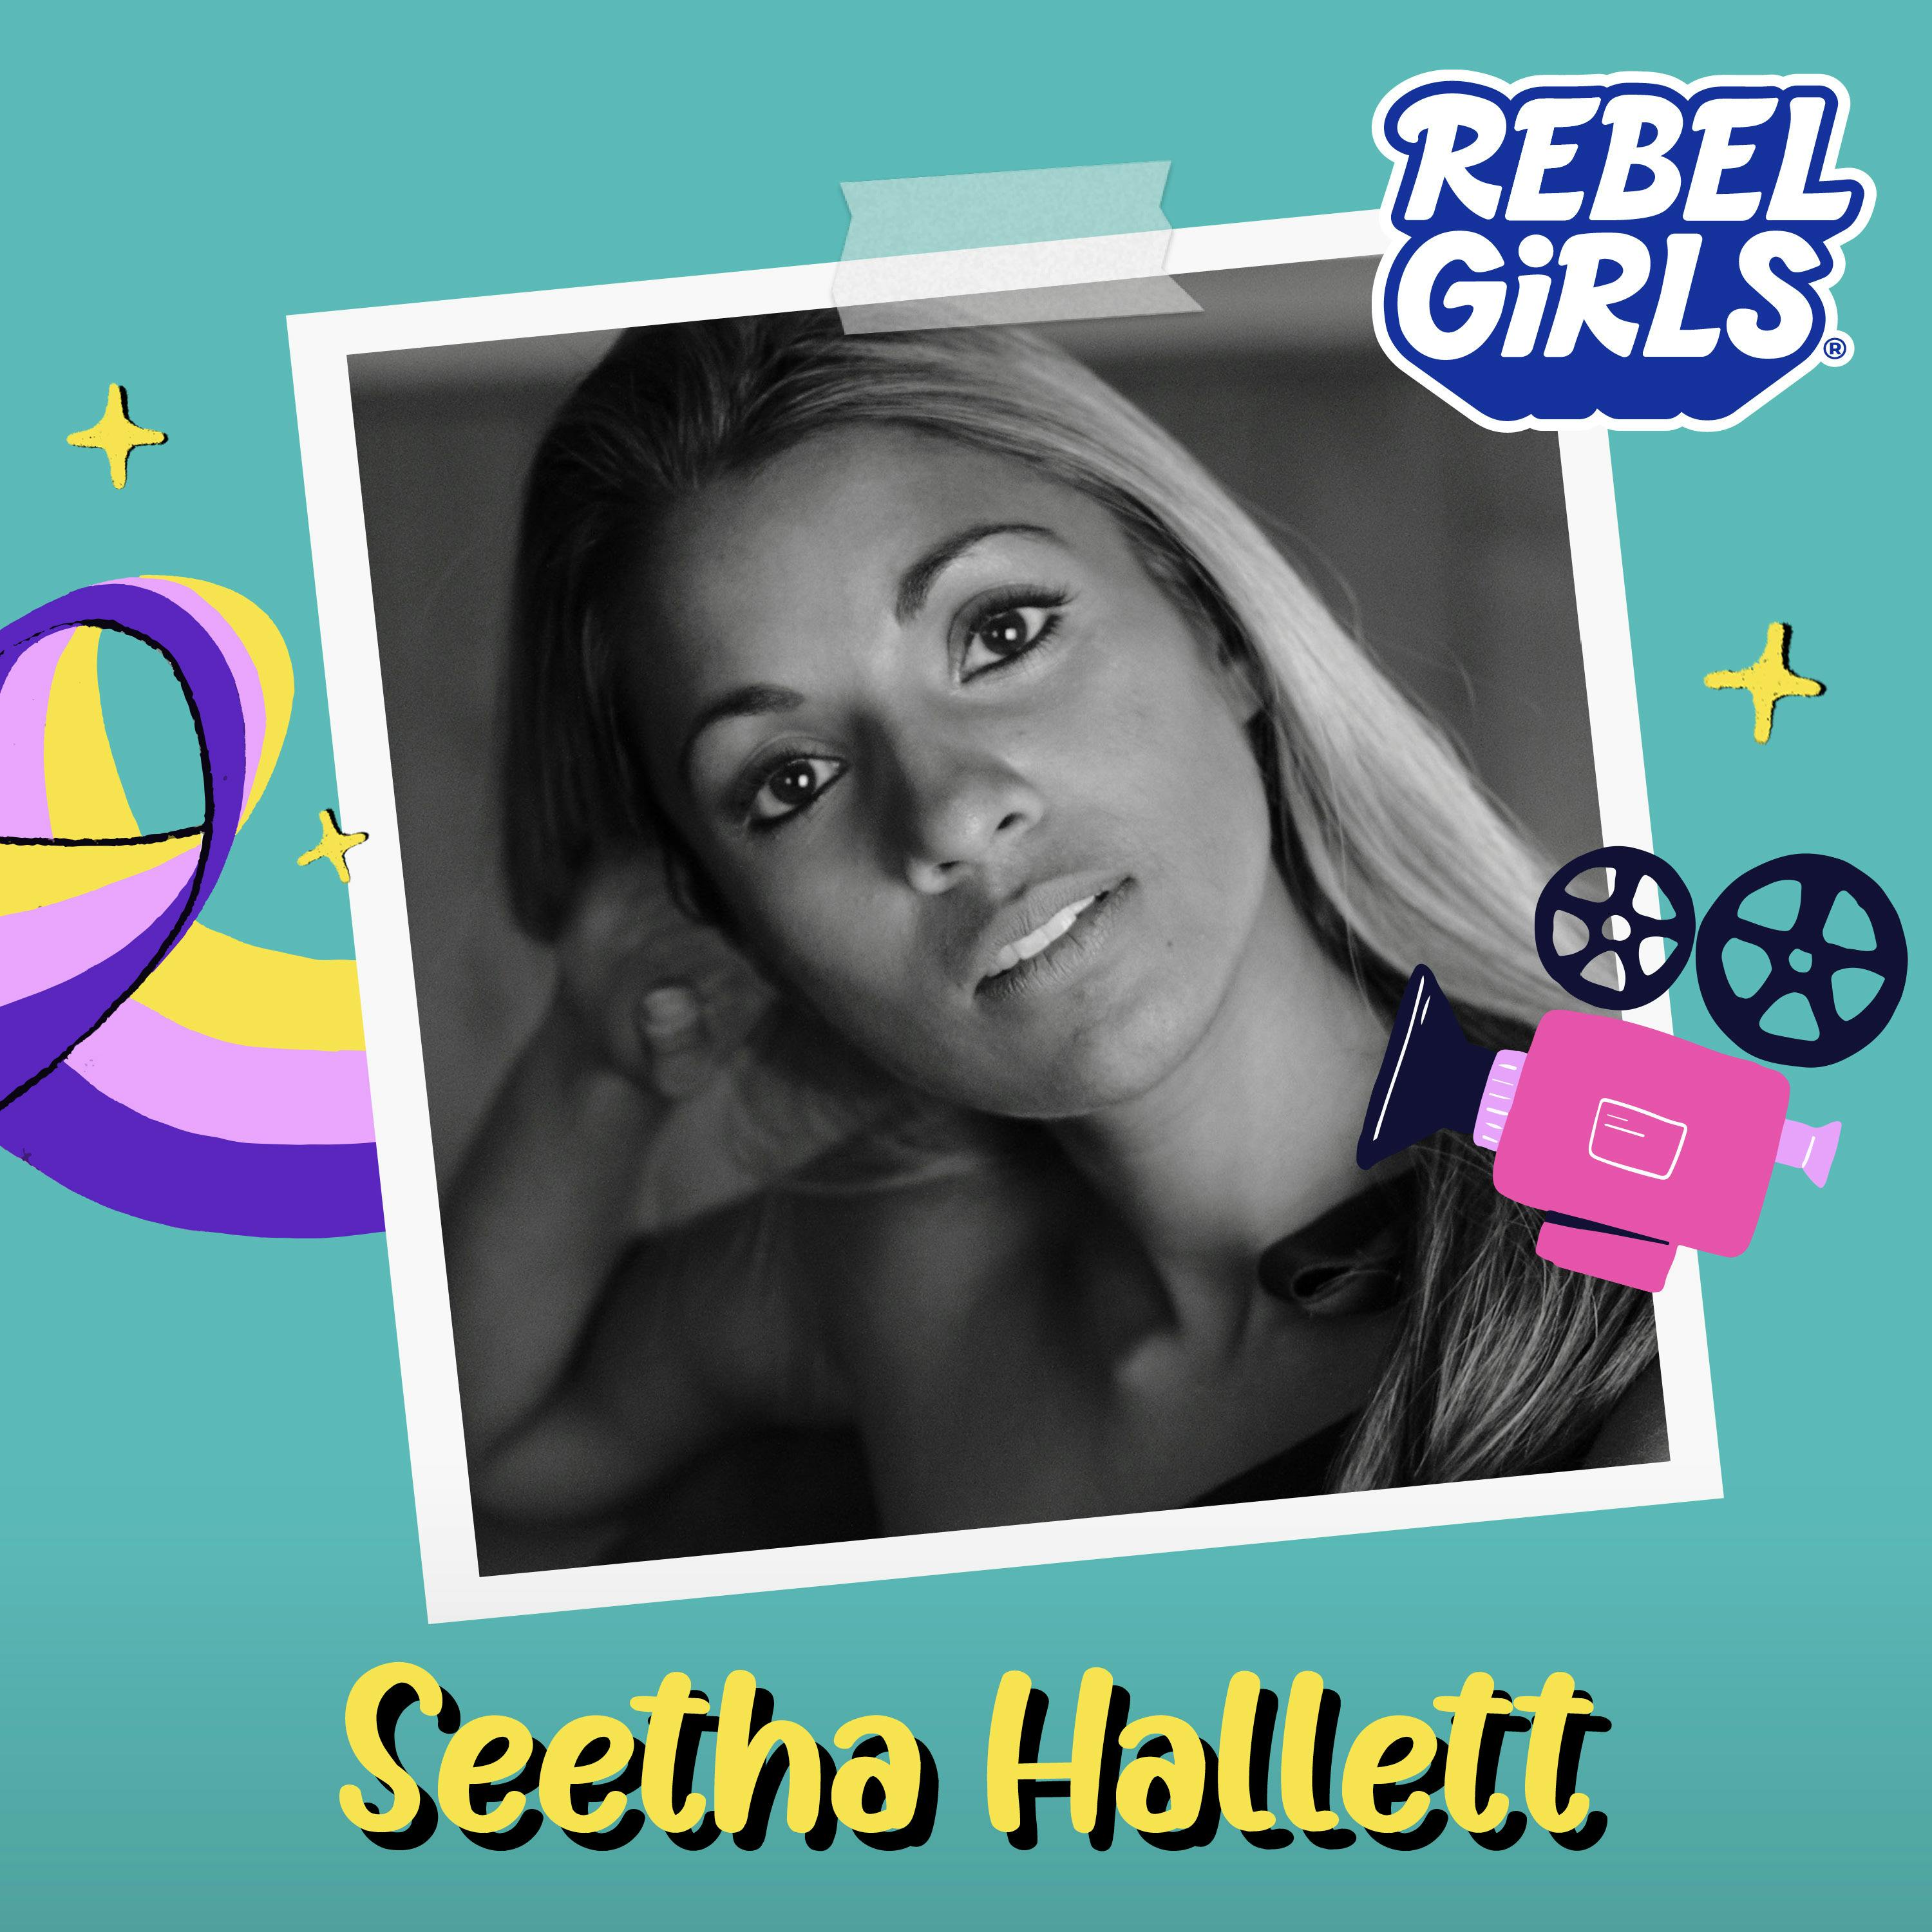 Get to Know Seetha Hallett